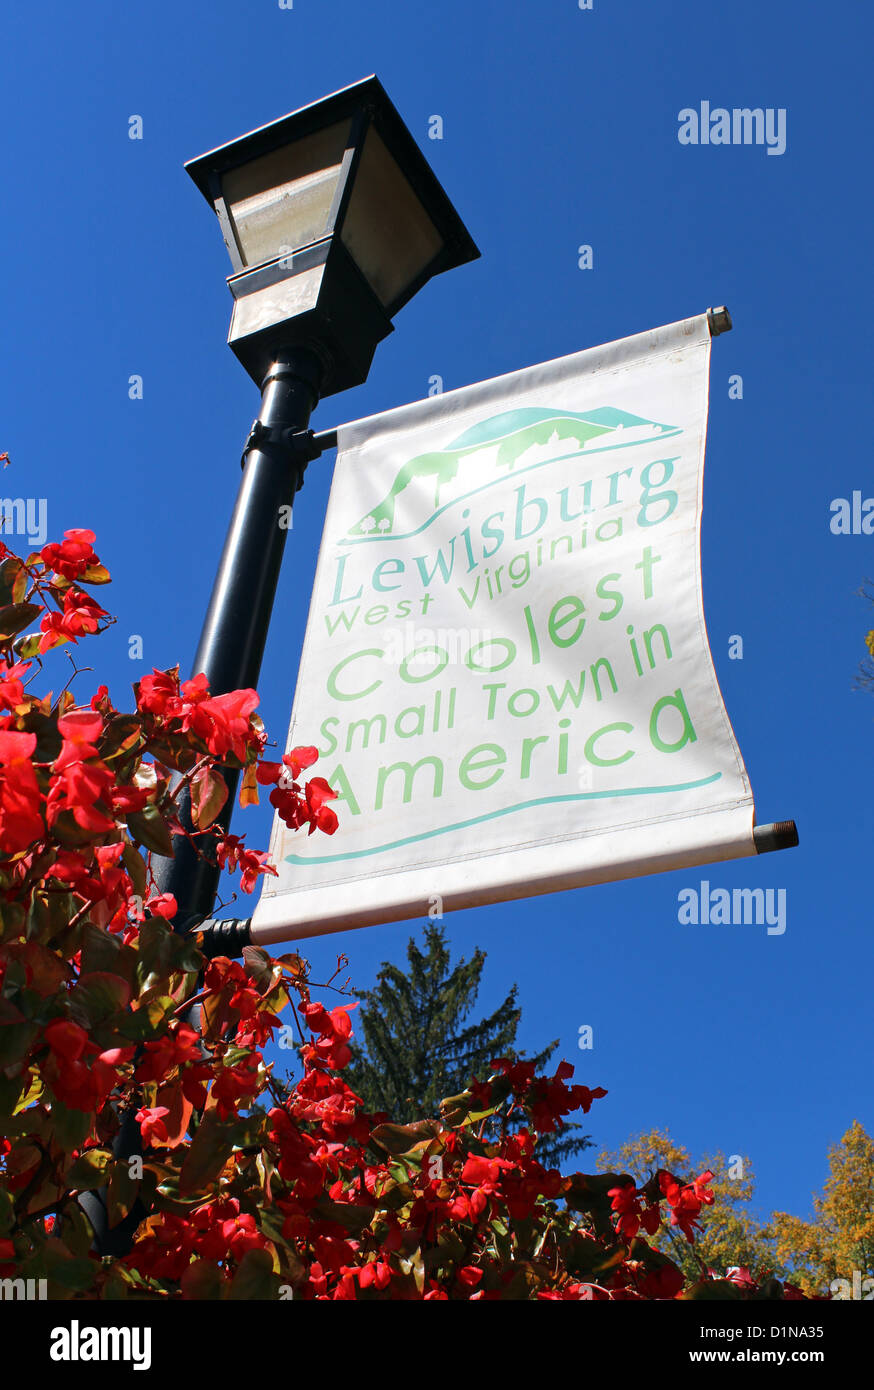 Lewisburg, pequeña ciudad más cool en América signo, Virginia Occidental, Estados Unidos, EE.UU. Foto de stock